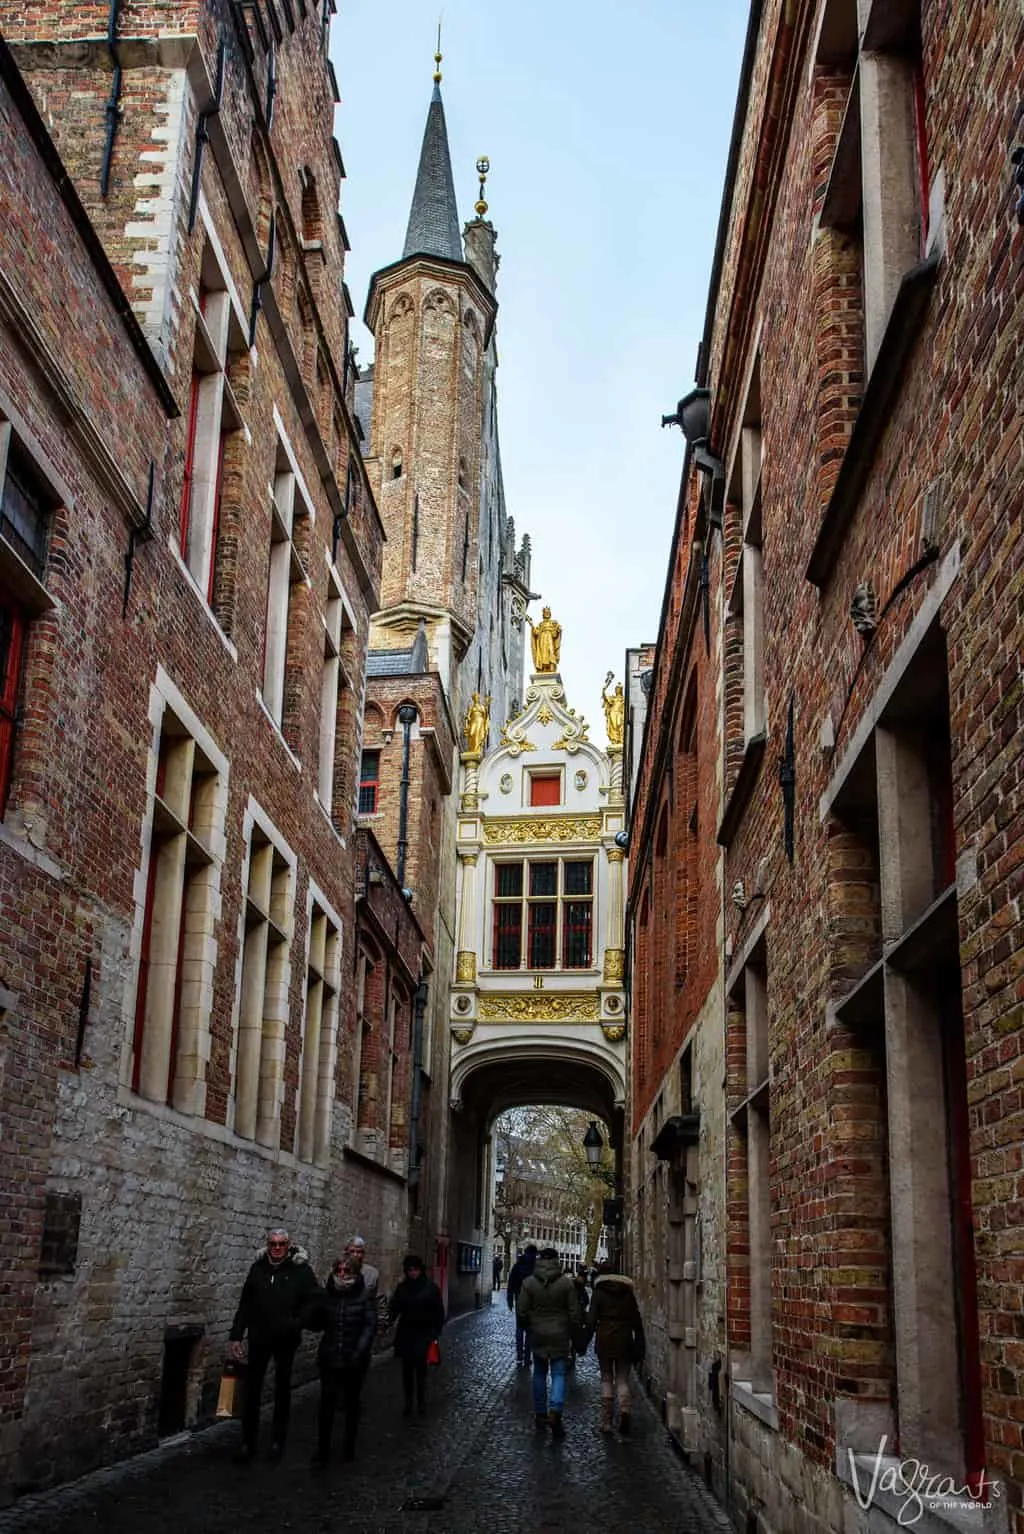 Ornate closed bridge between two buildings in old town Bruges.